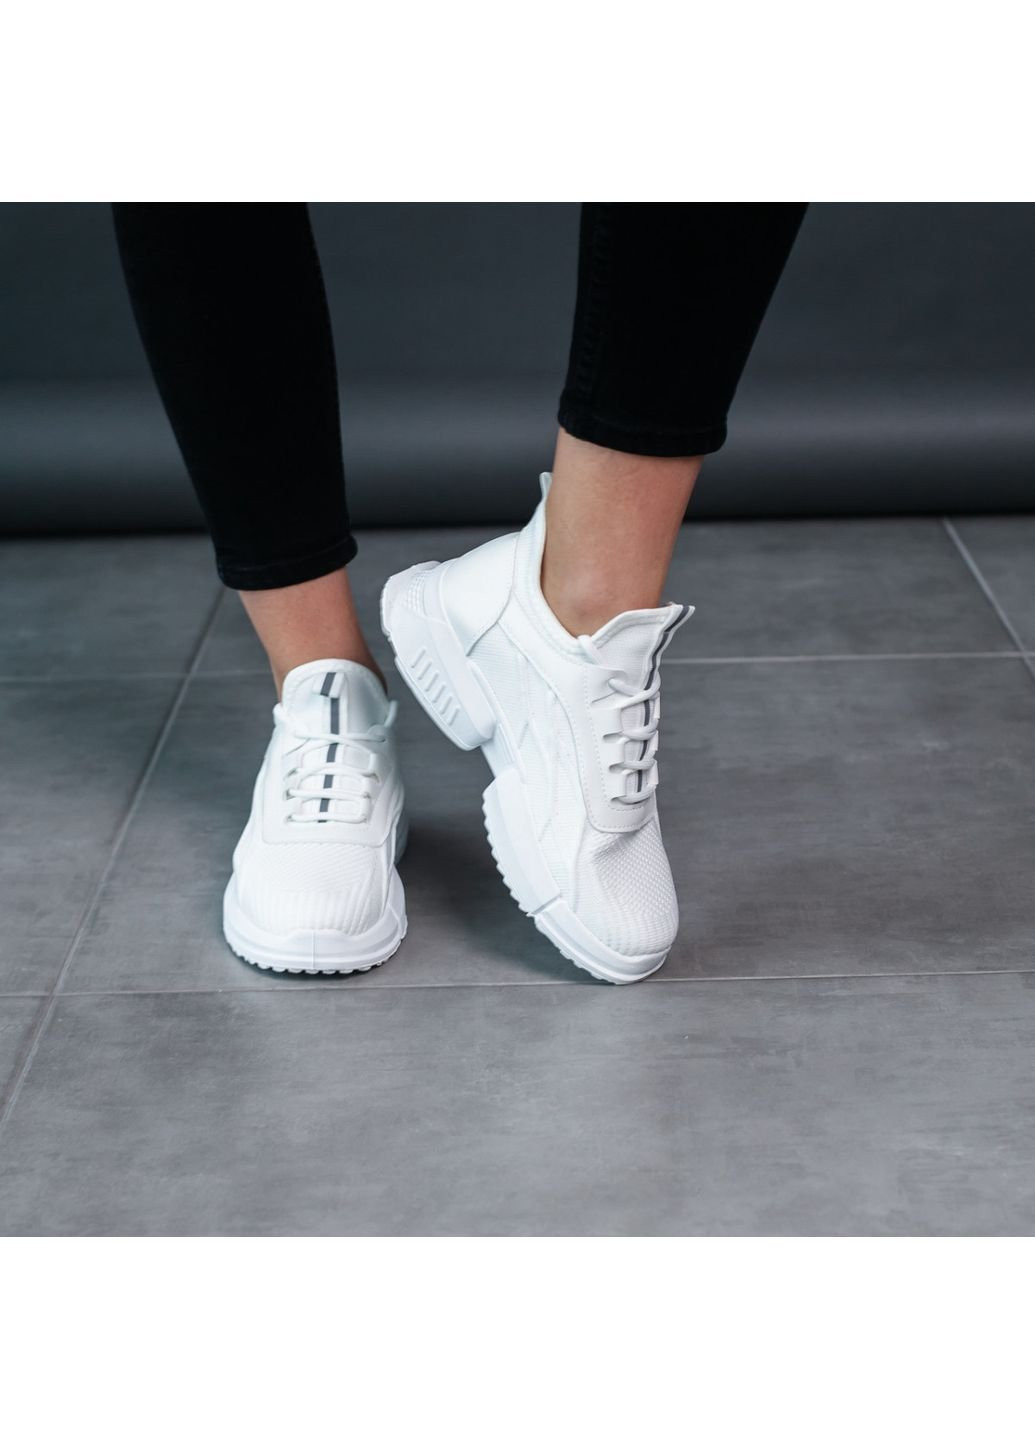 Белые демисезонные кроссовки женские khaleesi 3489 40 25 см белый Fashion